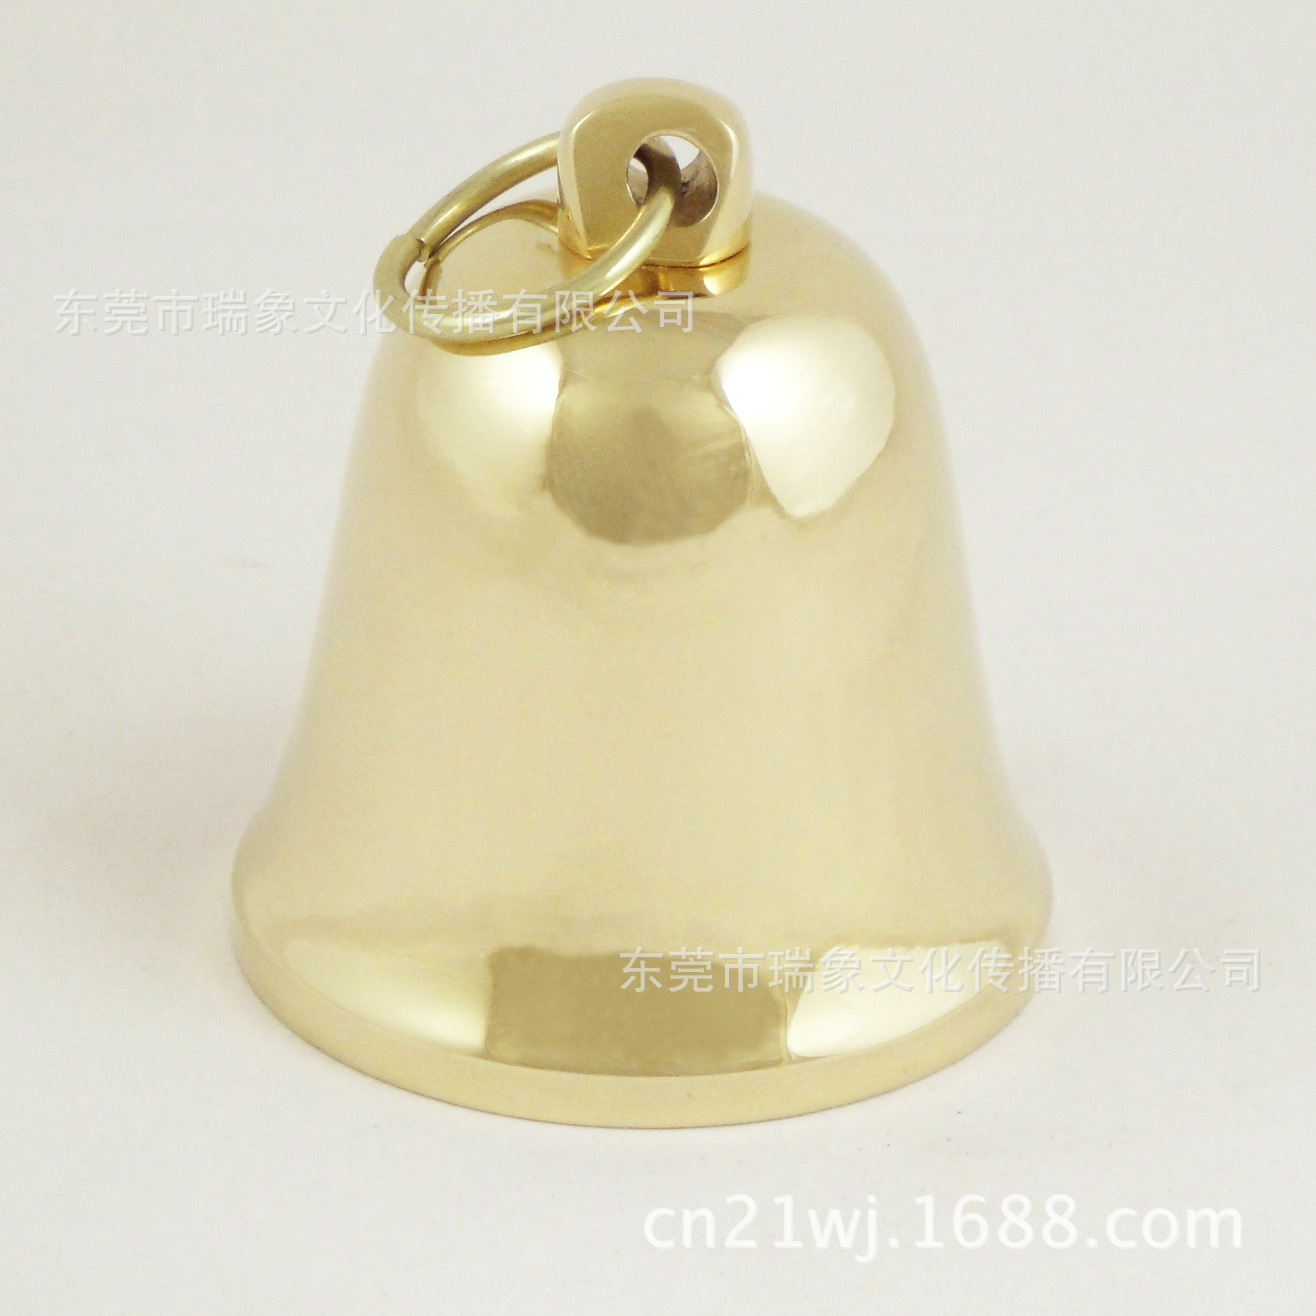 2寸铜铃铛圣诞节/黄铜小铜钟儿童玩具大小铃铛乐器圣诞节宠物5003